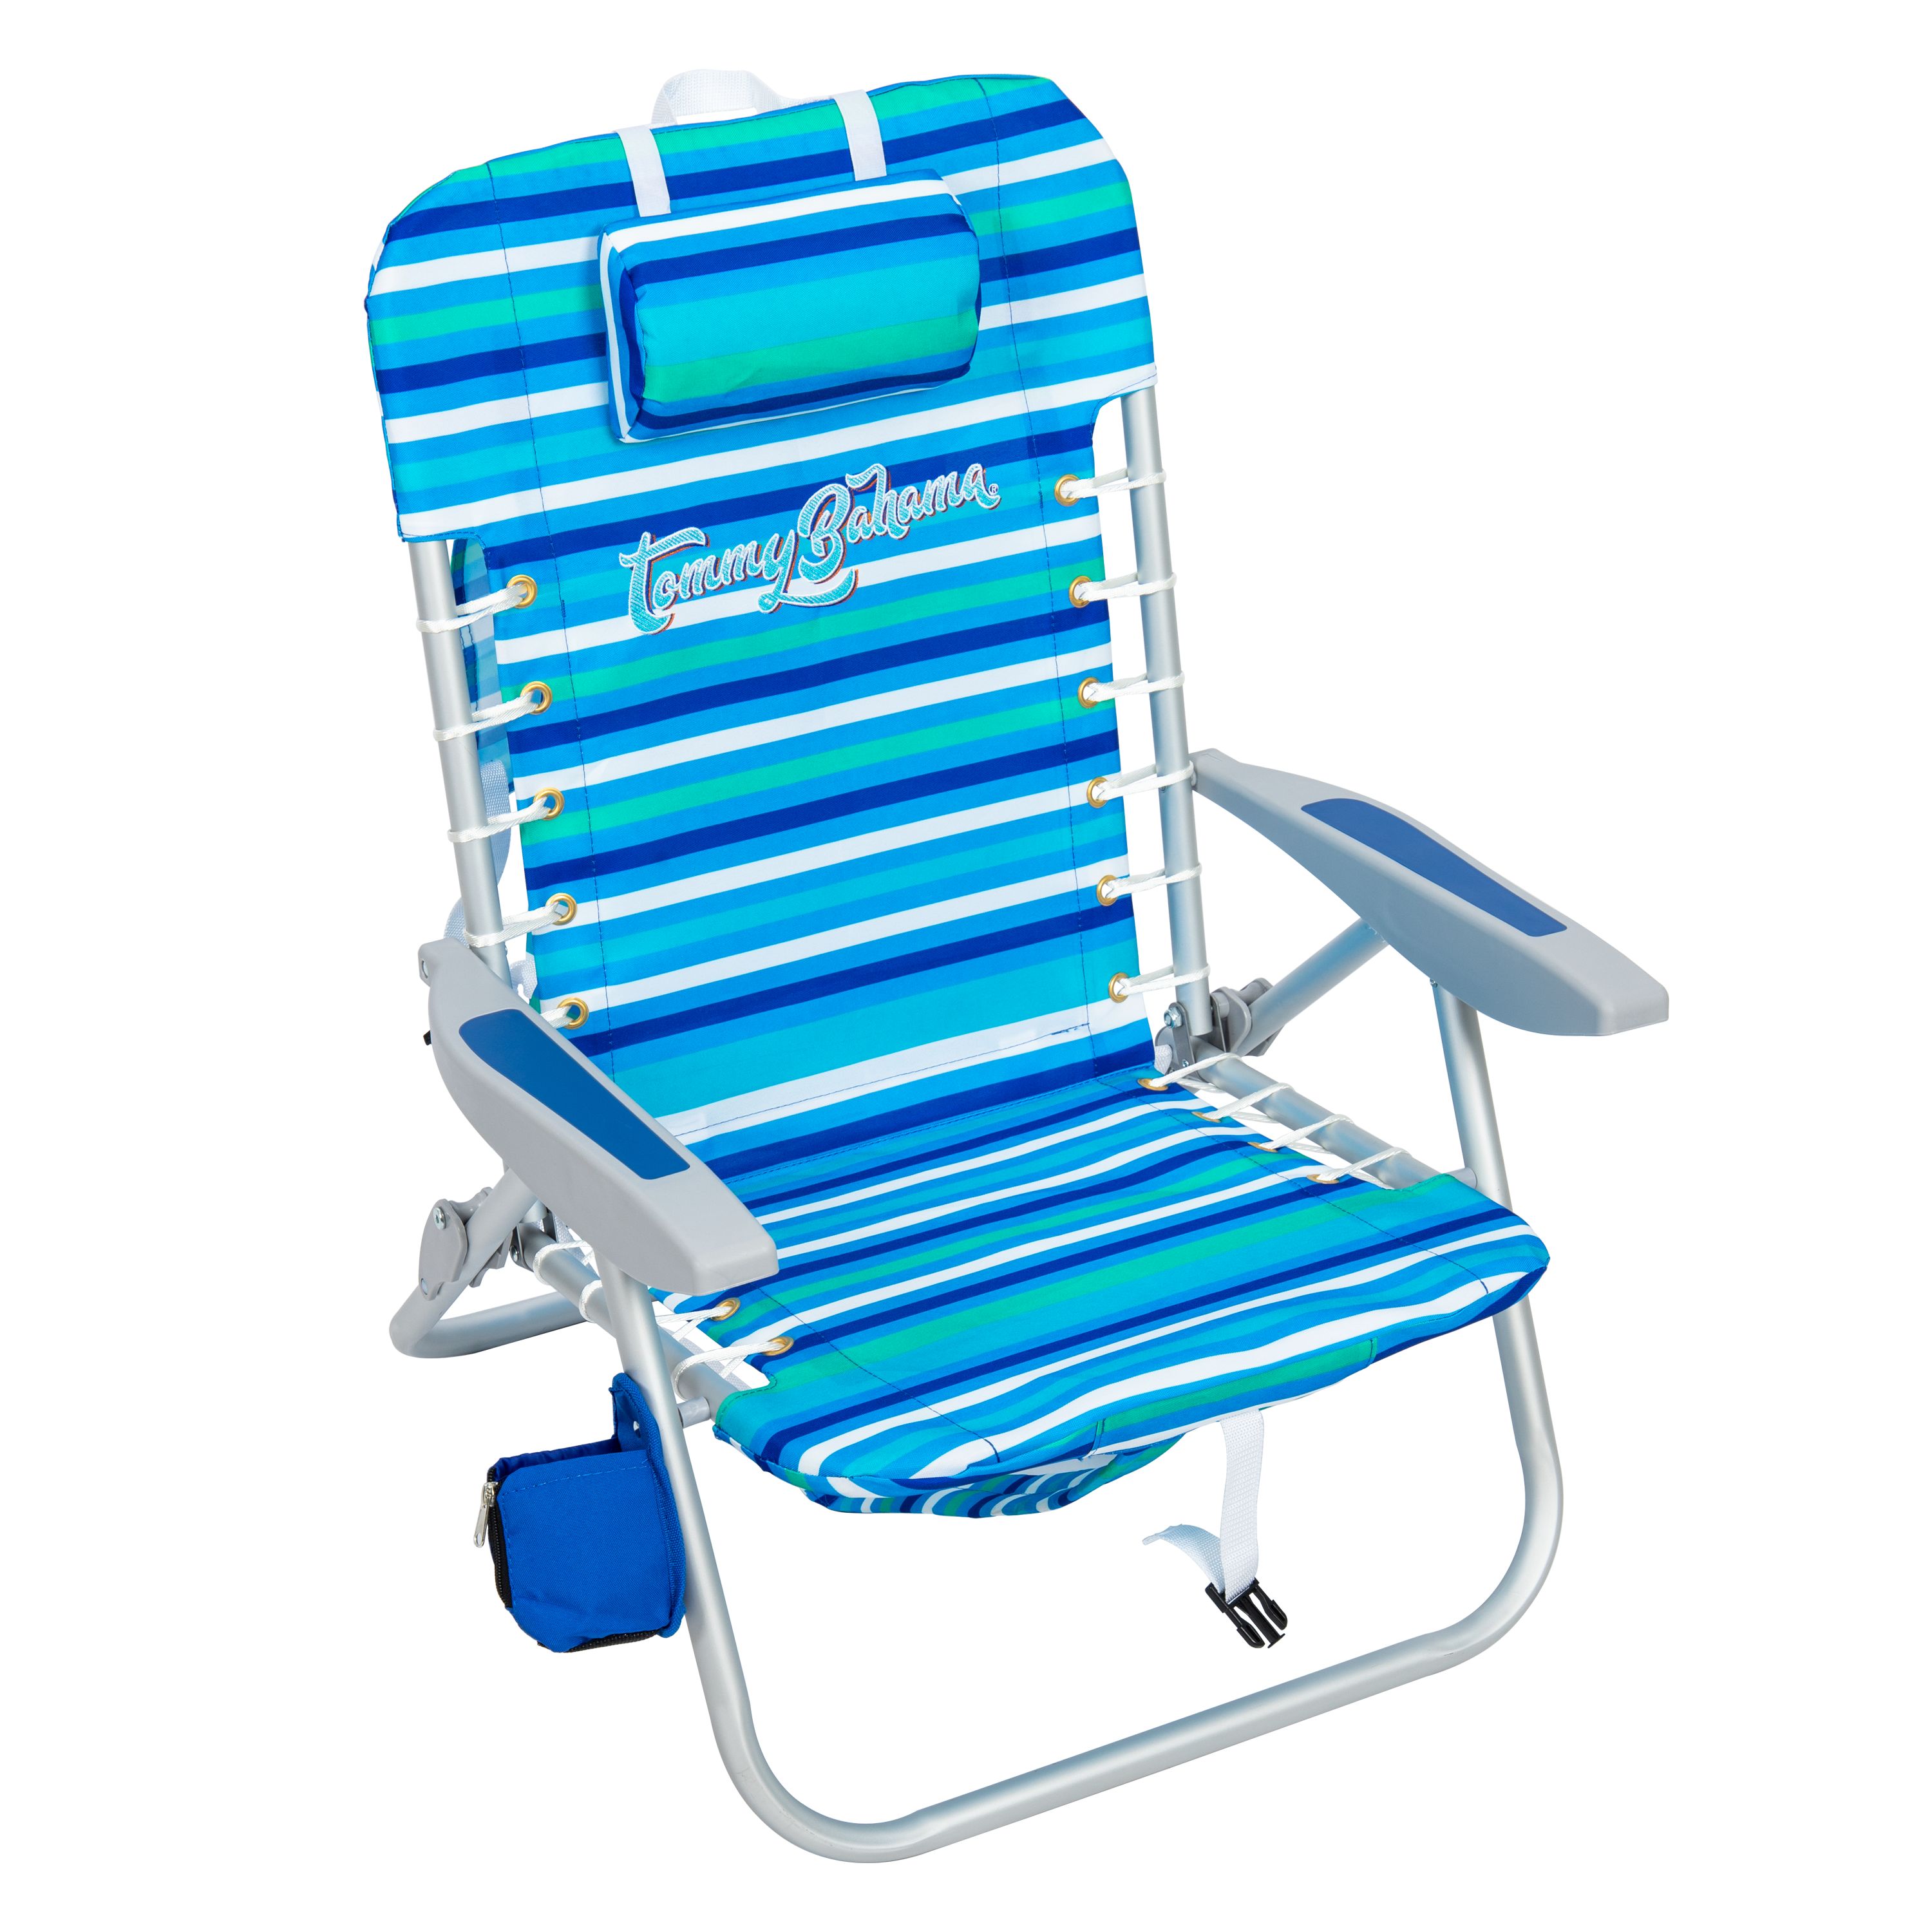 Tommy Bahama Beach Chair, Blue